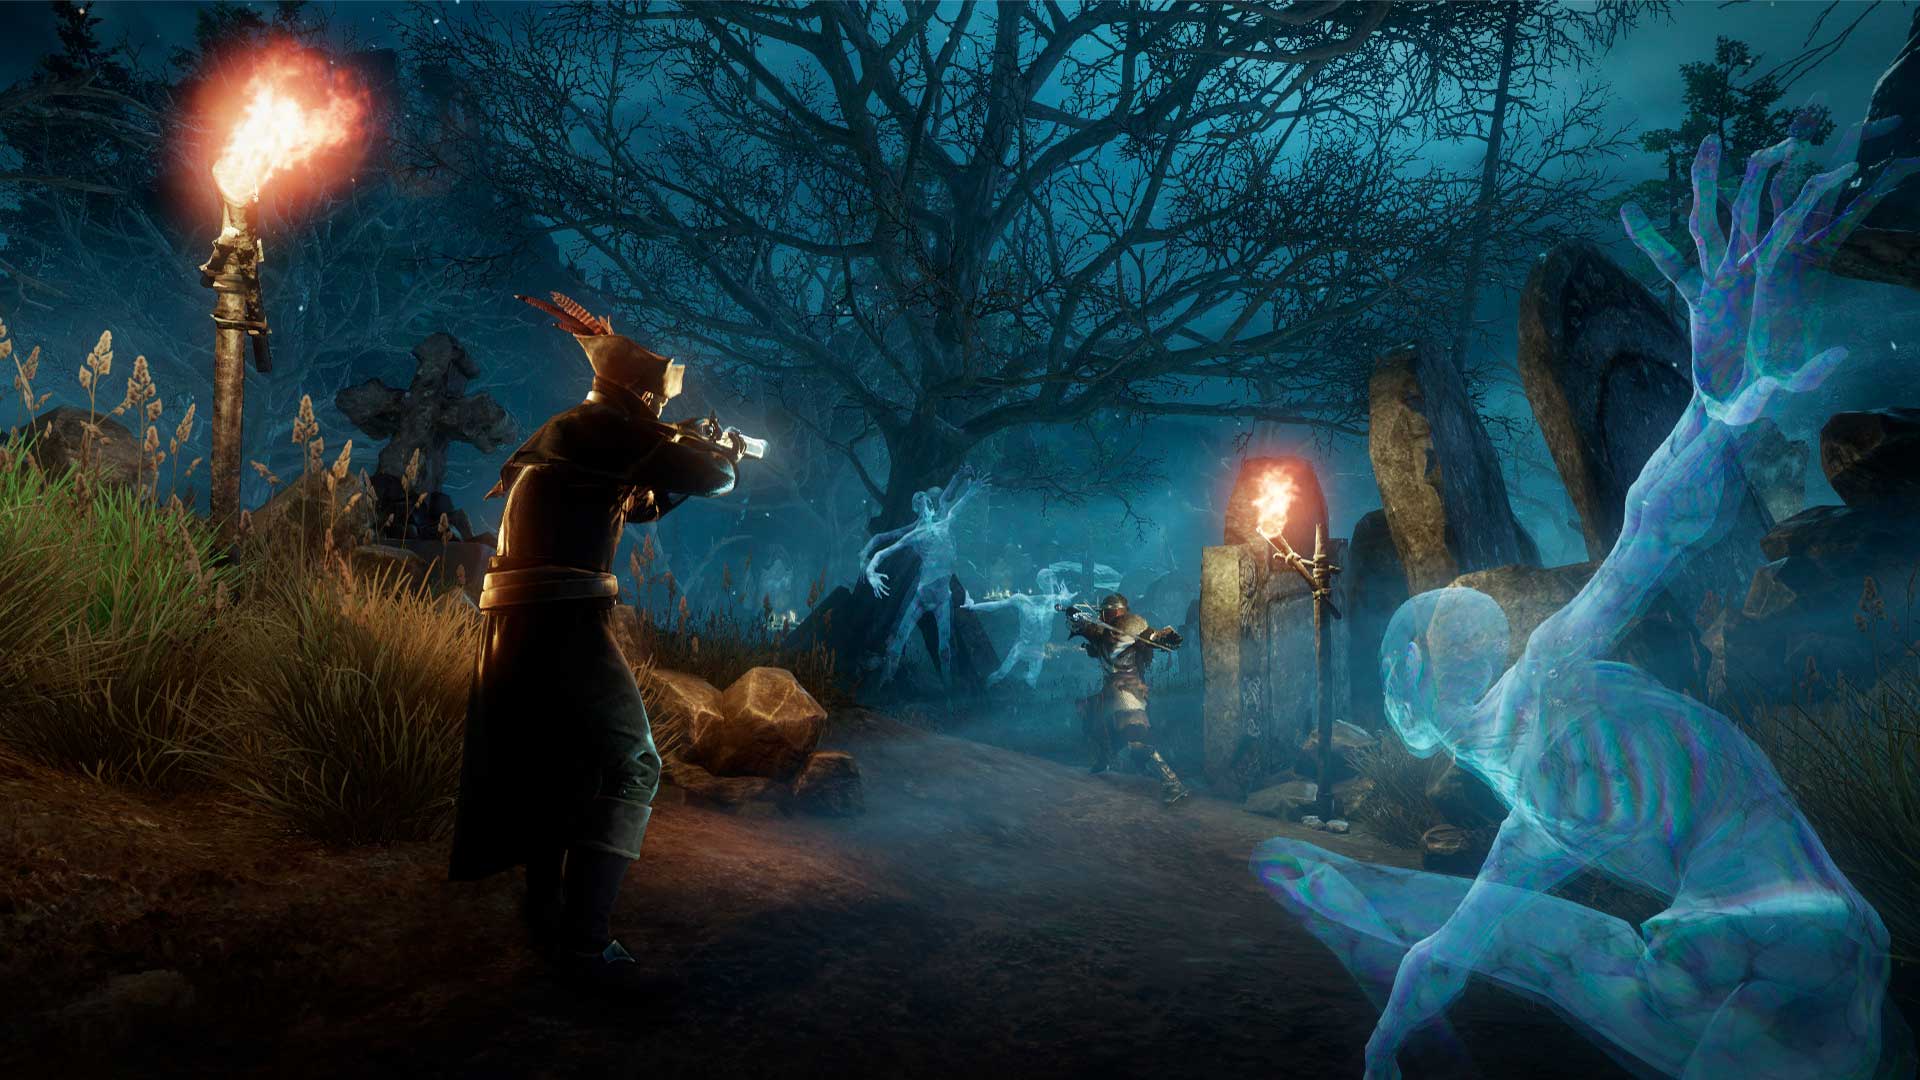 Изображение на играчи в Новия свят, стрелящи с мускети в гробище